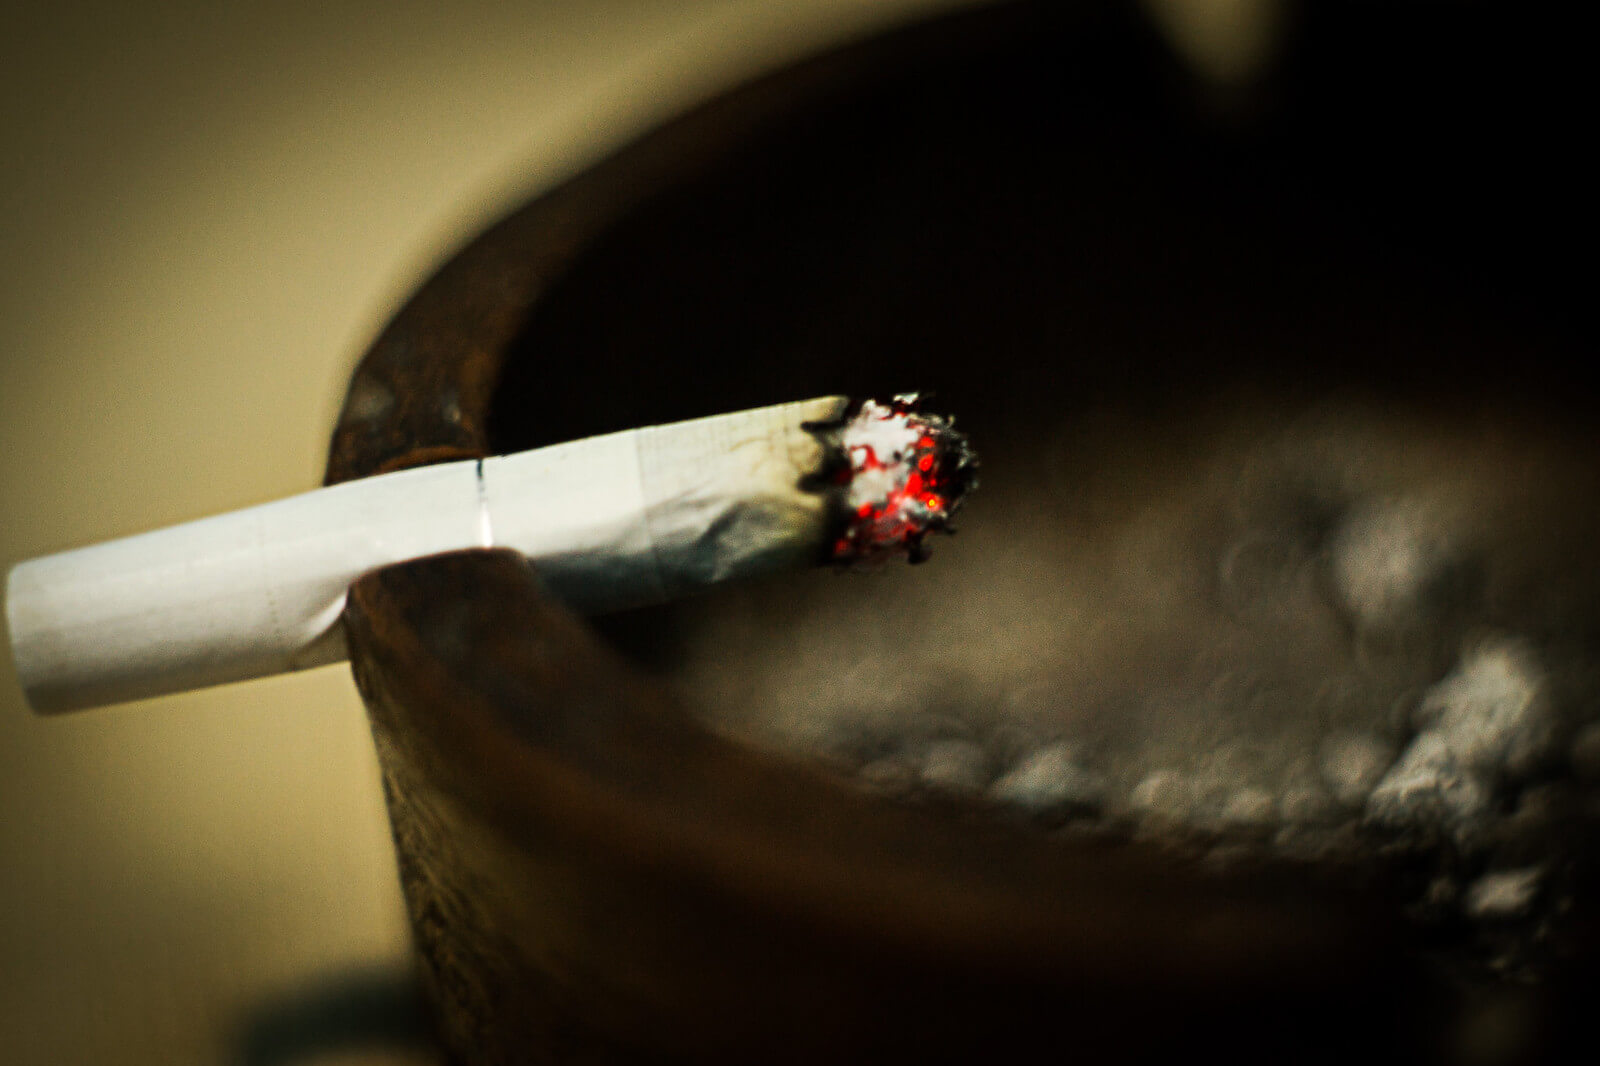 lit cigarette in ashtray